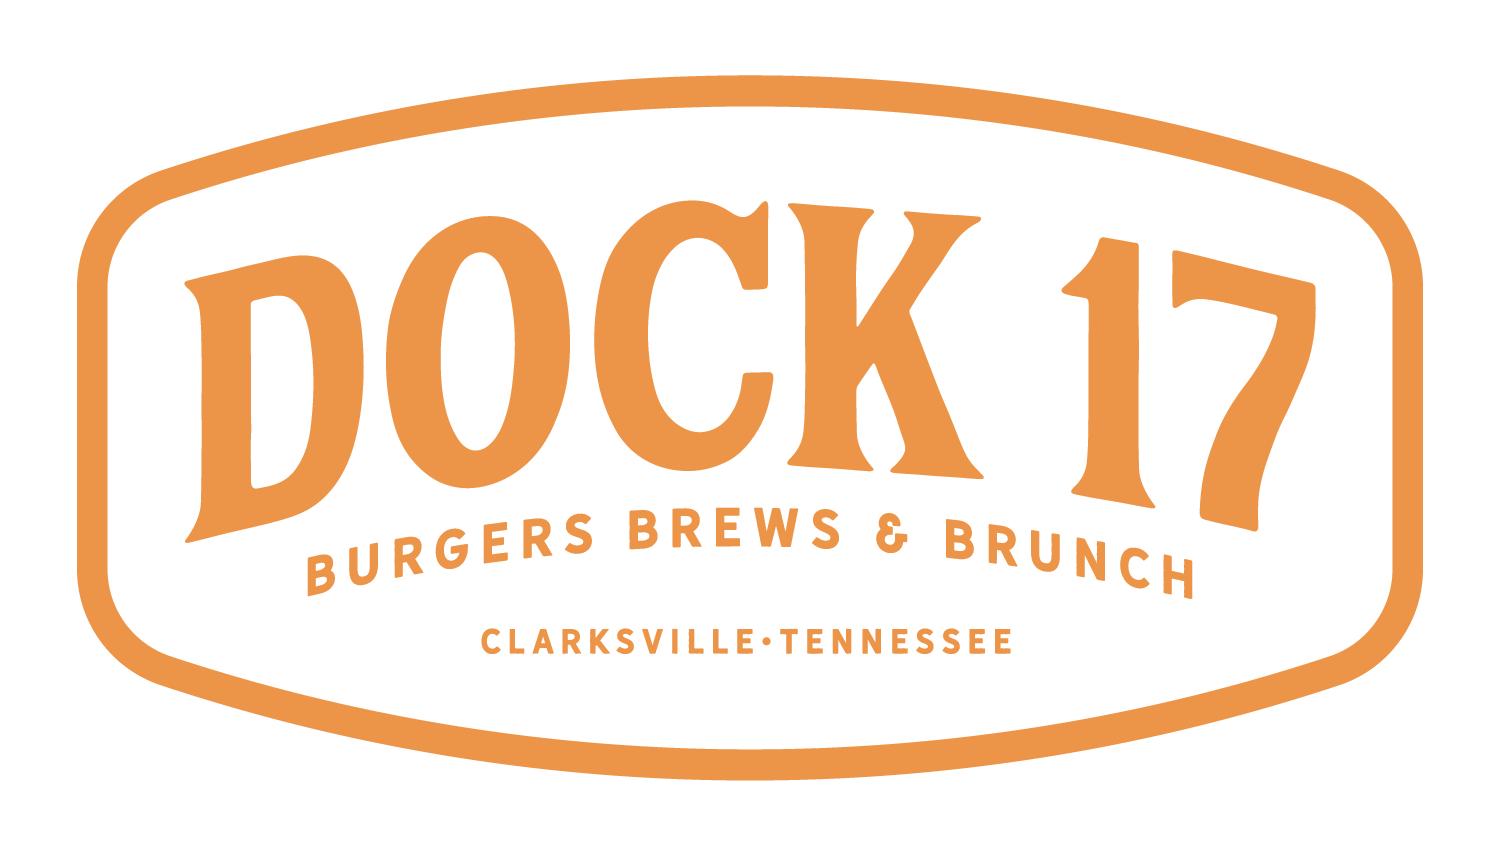 Dock 17 Burgers Brews & Brunch Resturant